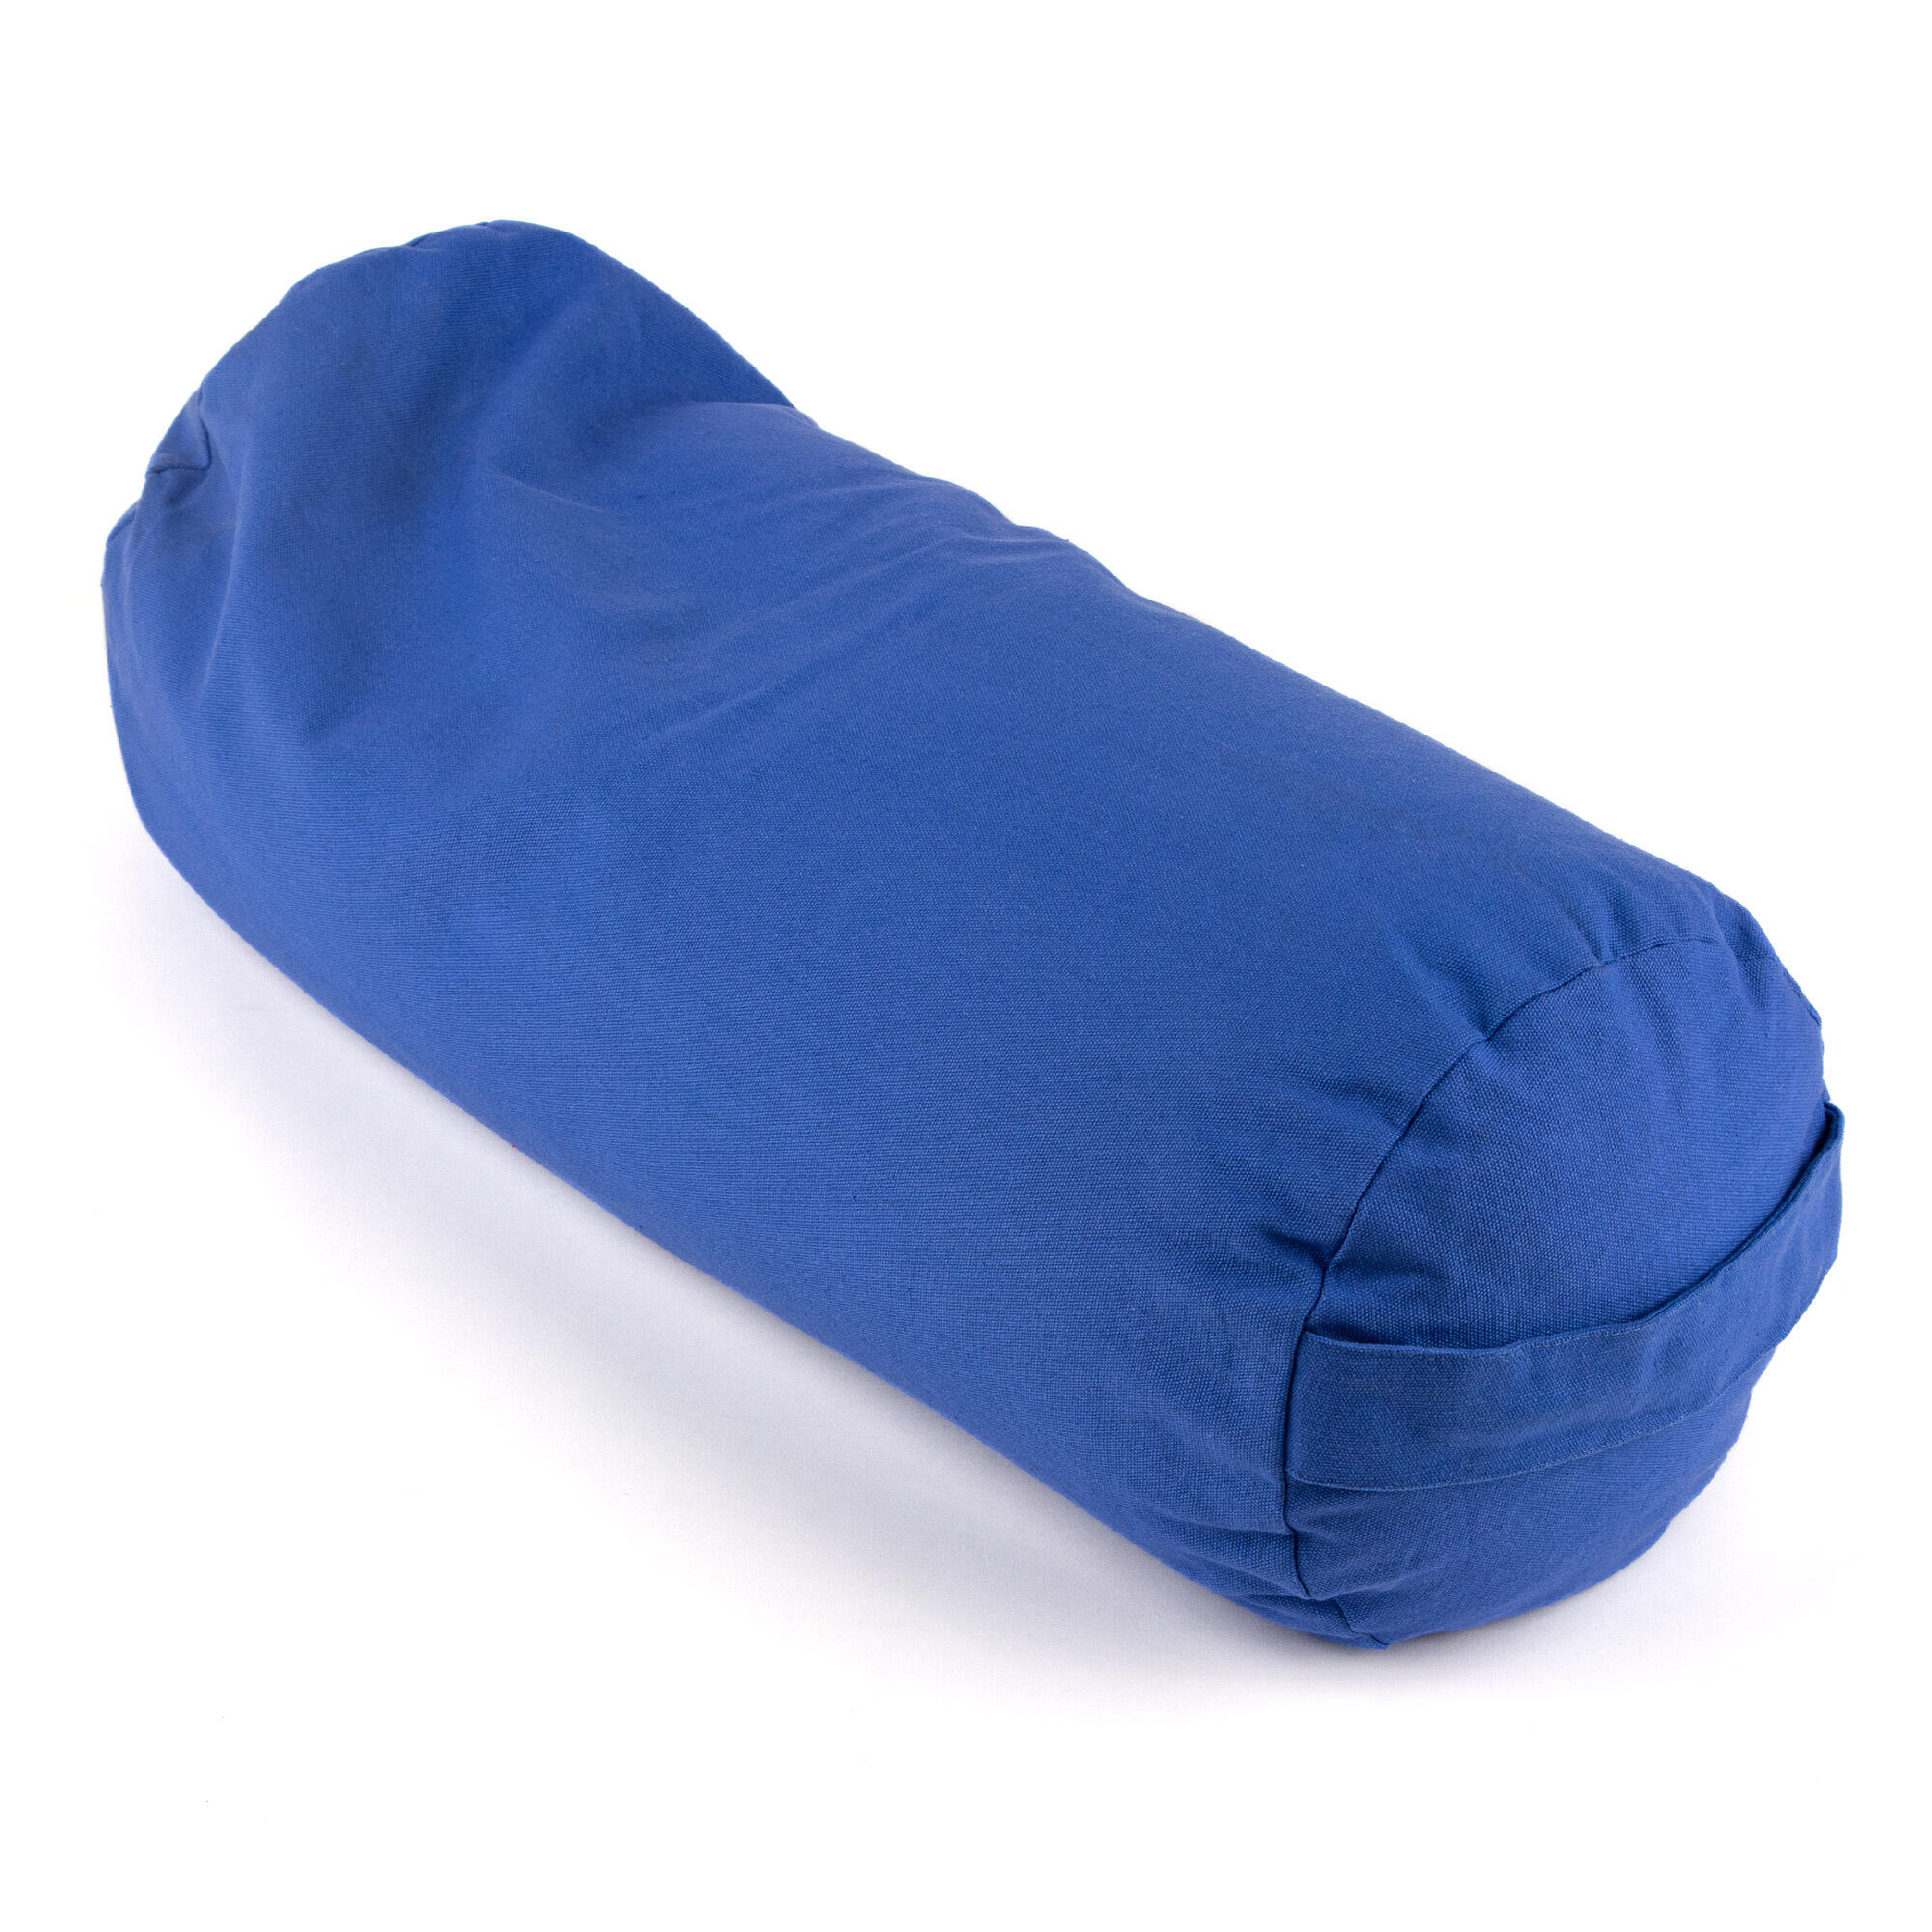 Myga Buckwheat Support Bolster Pillow - Blue 1/8